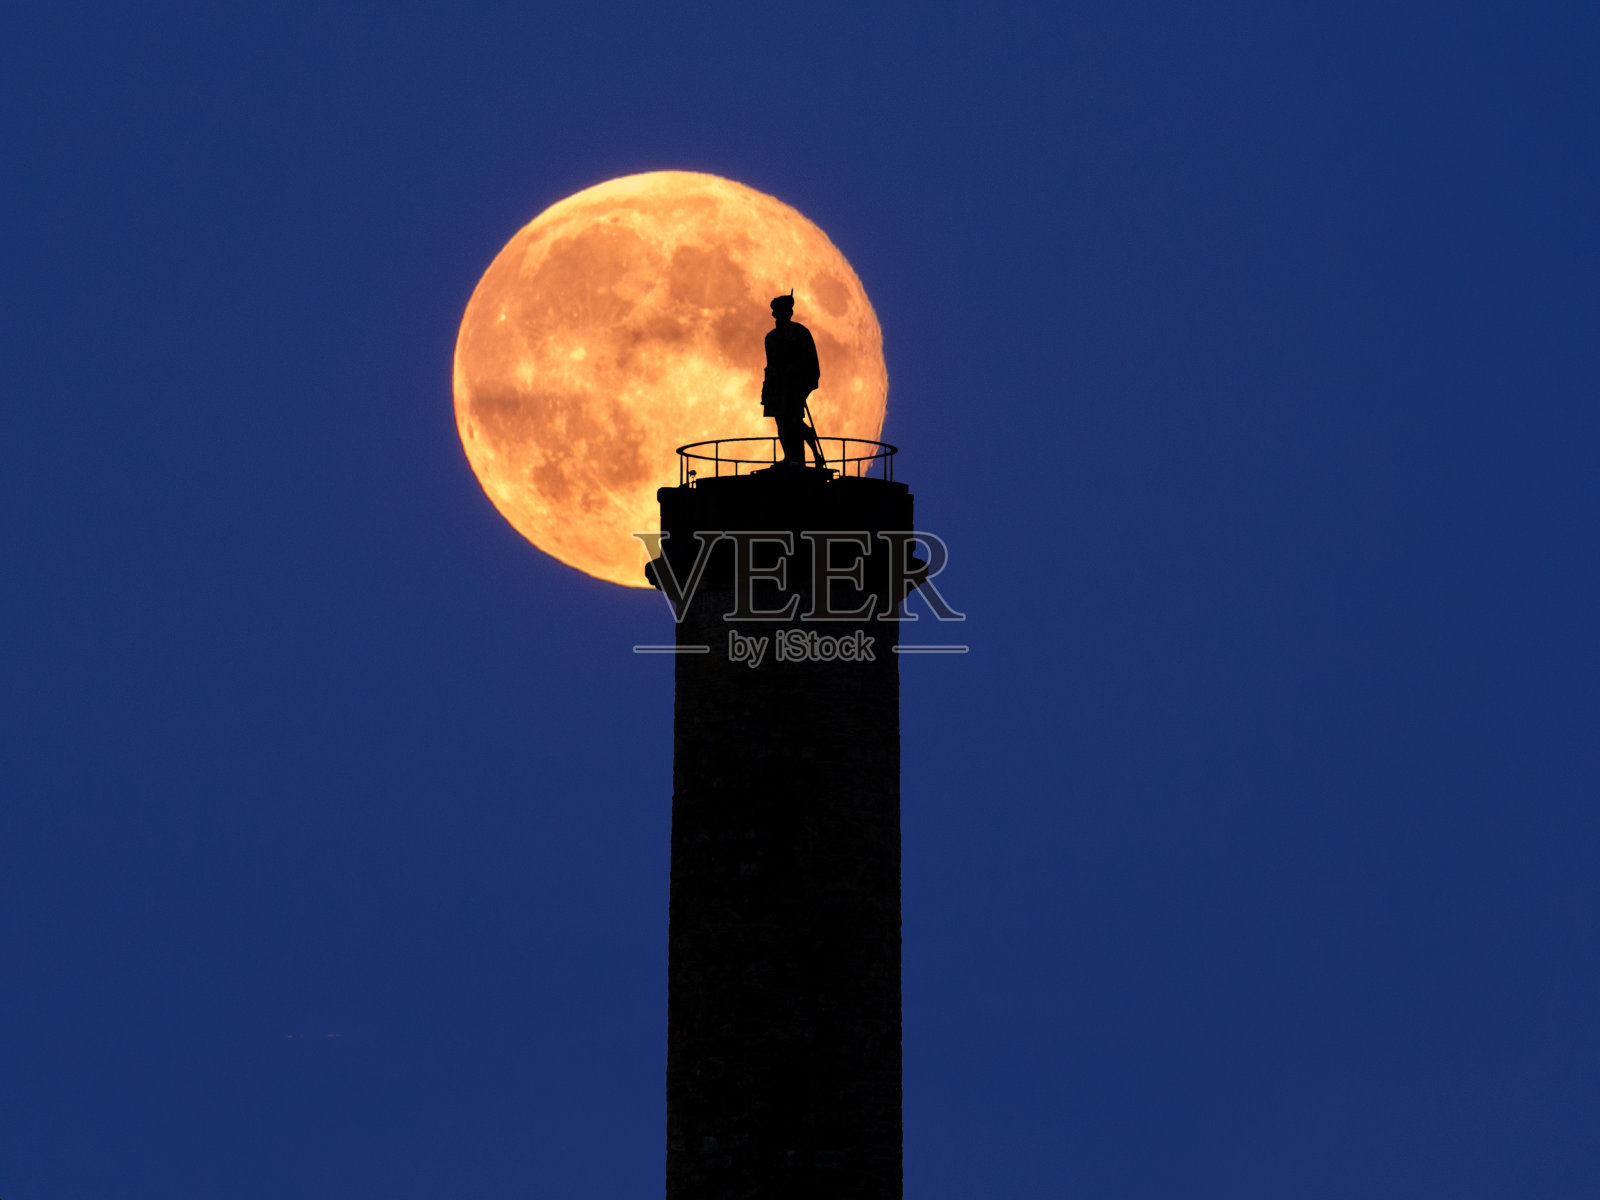 苏格兰格伦芬南纪念碑和升起的超级月亮照片摄影图片